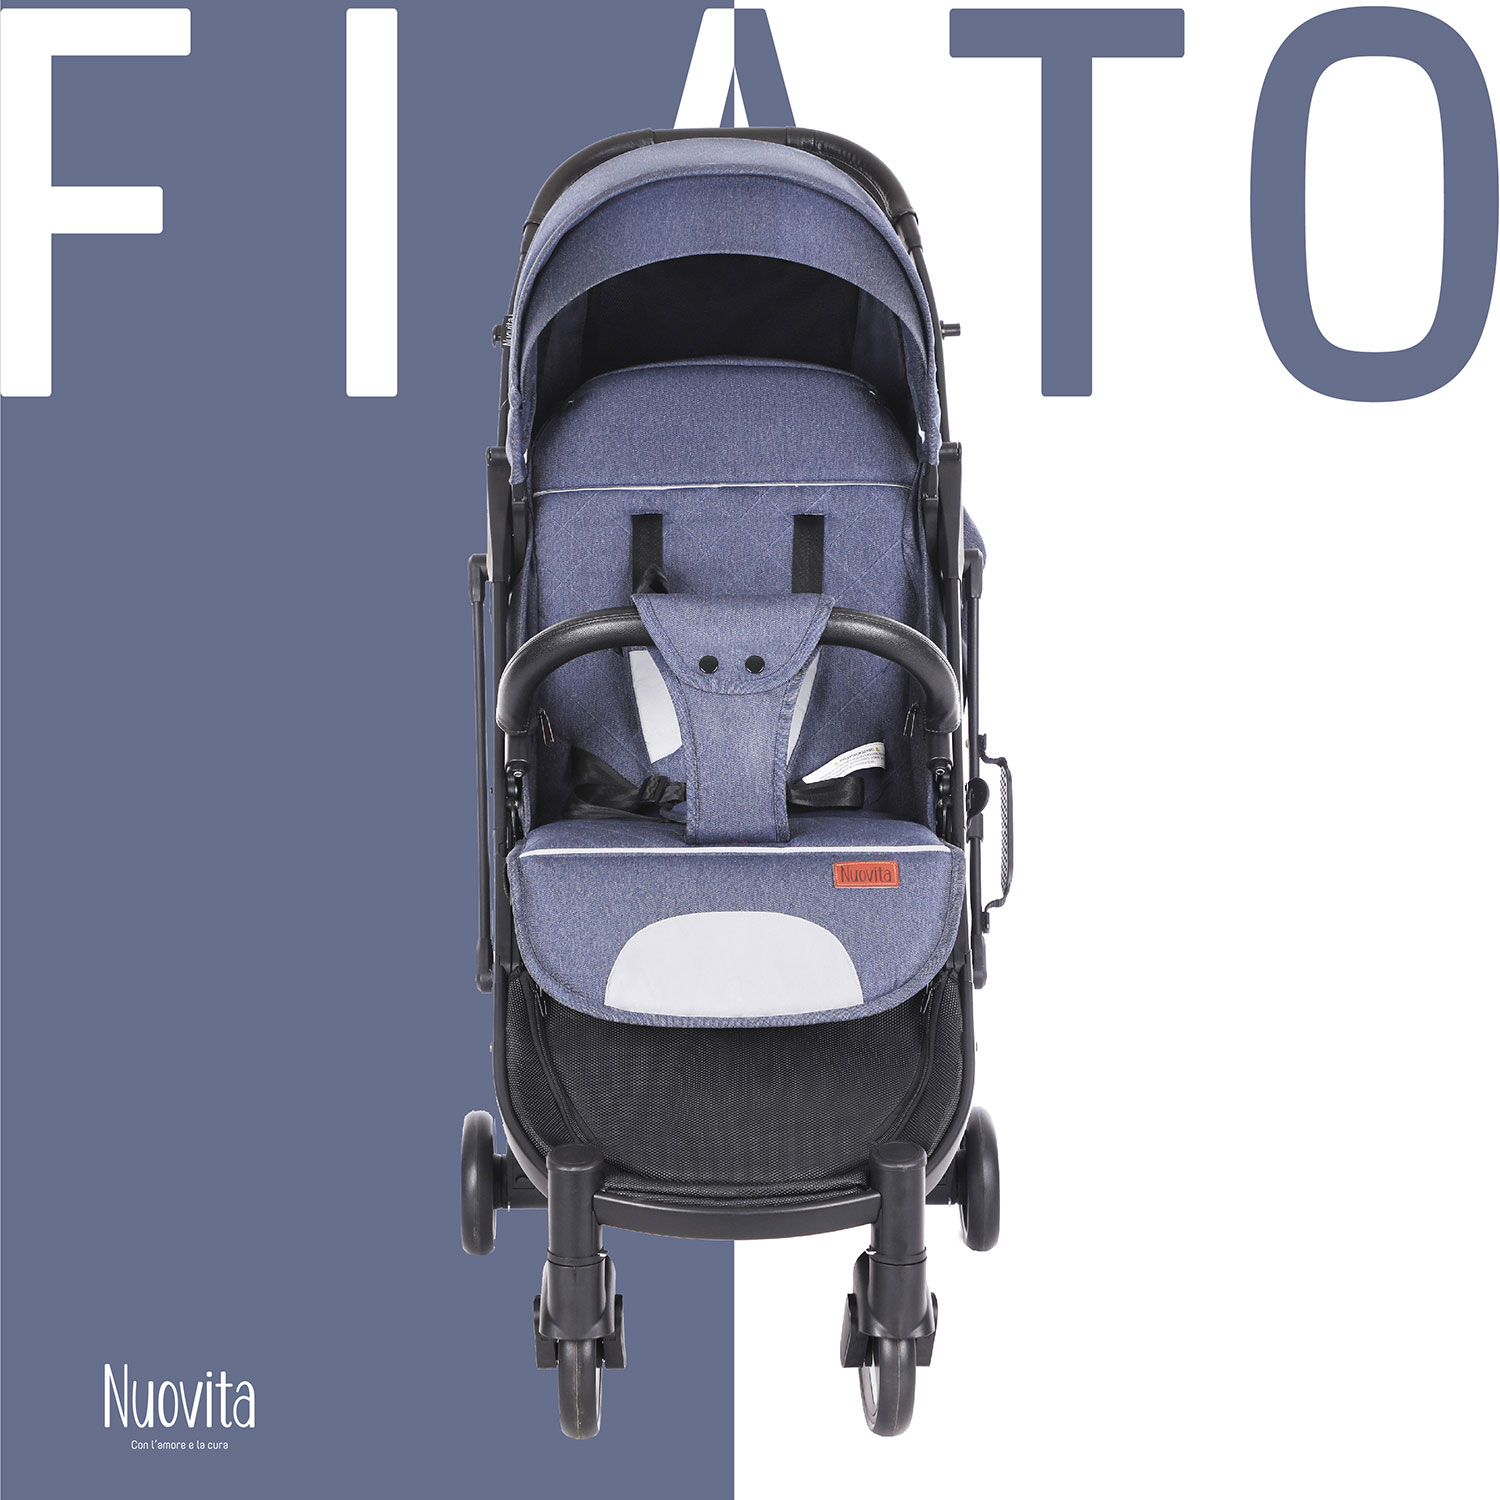 Прогулочная коляска Nuovita Fiato (Blu, Nero / Голубой, черный)